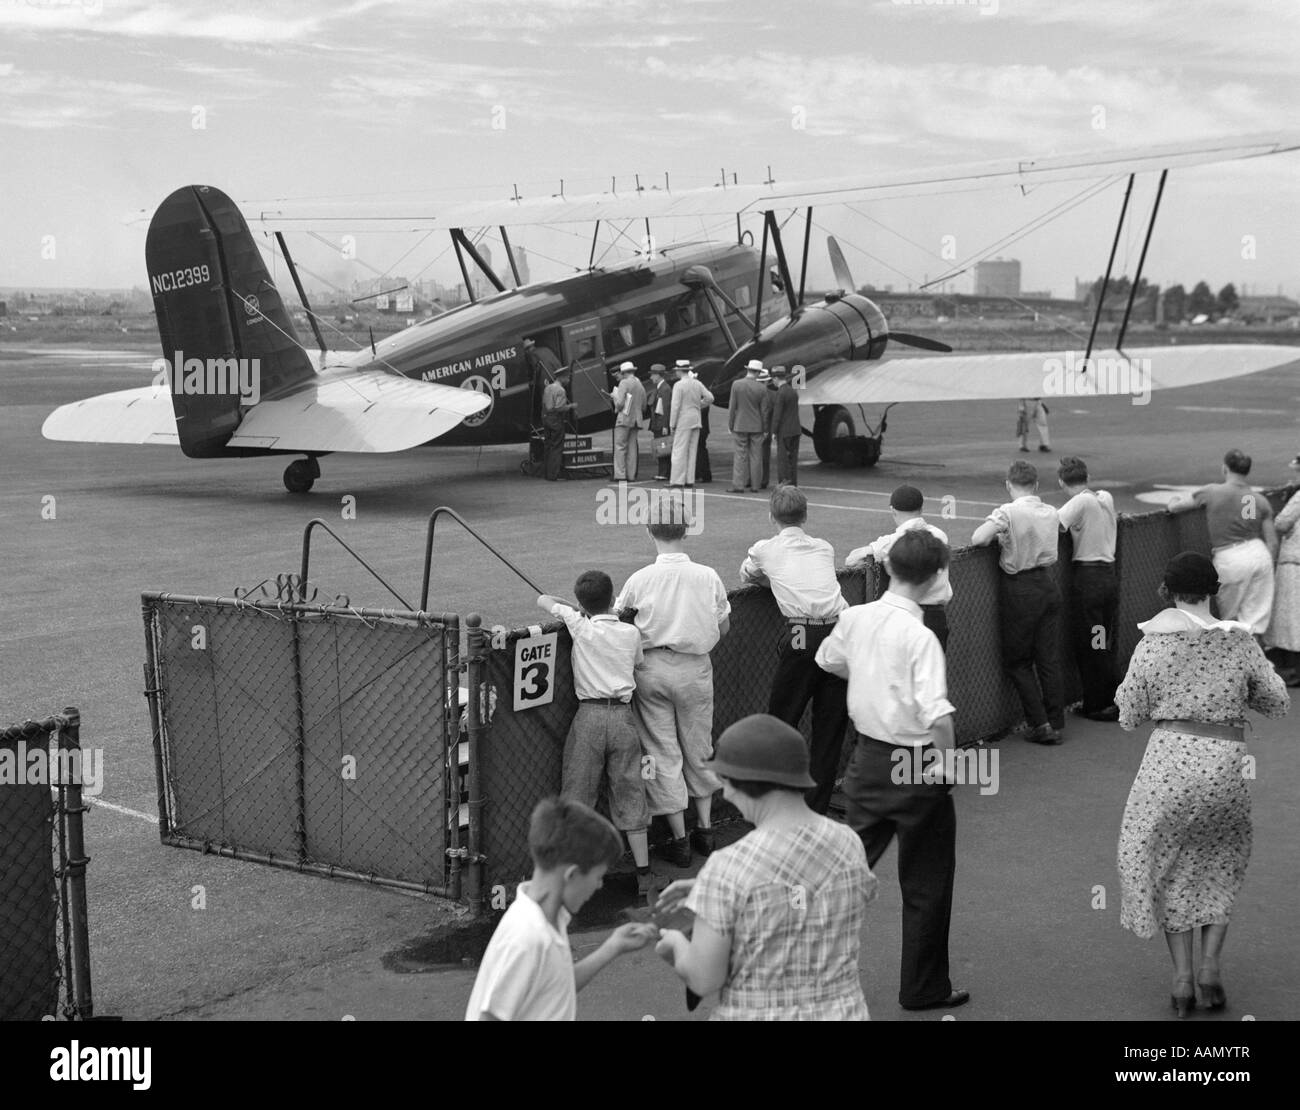 1930s IMBARCO PASSEGGERI AMERICAN AIRLINES CONDOR velivolo biplano per volo commerciale da NEWARK NEW JERSEY USA AIRPORT Foto Stock